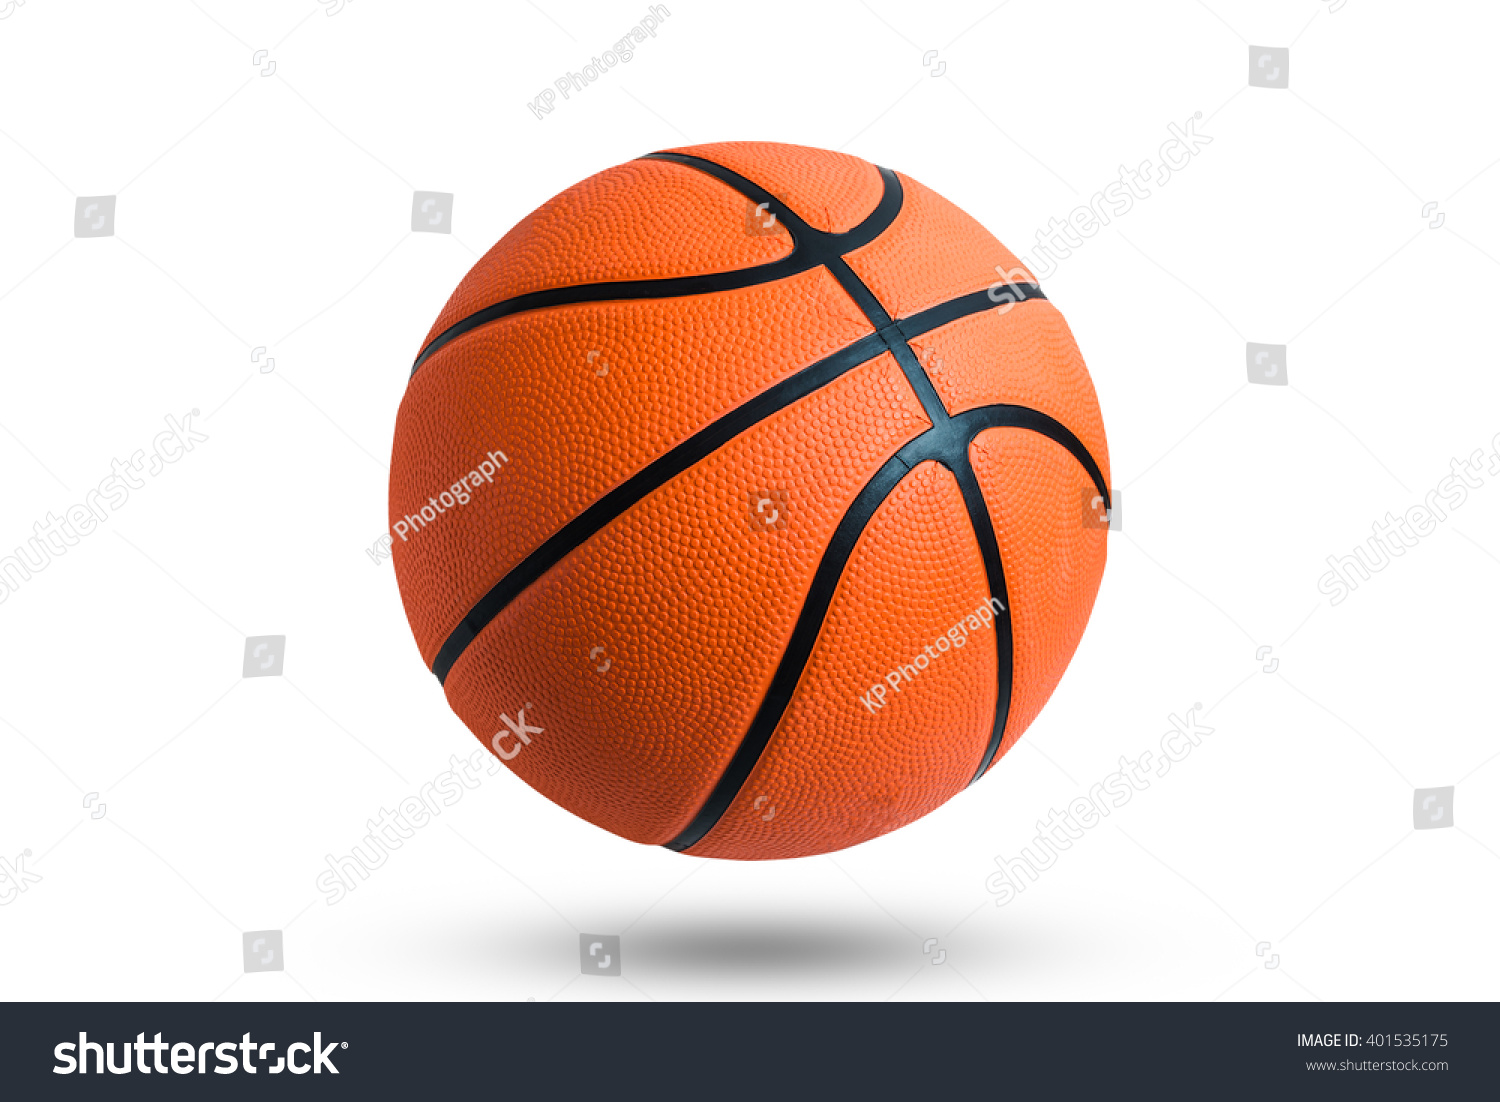 Basketball ball over white background.  #401535175